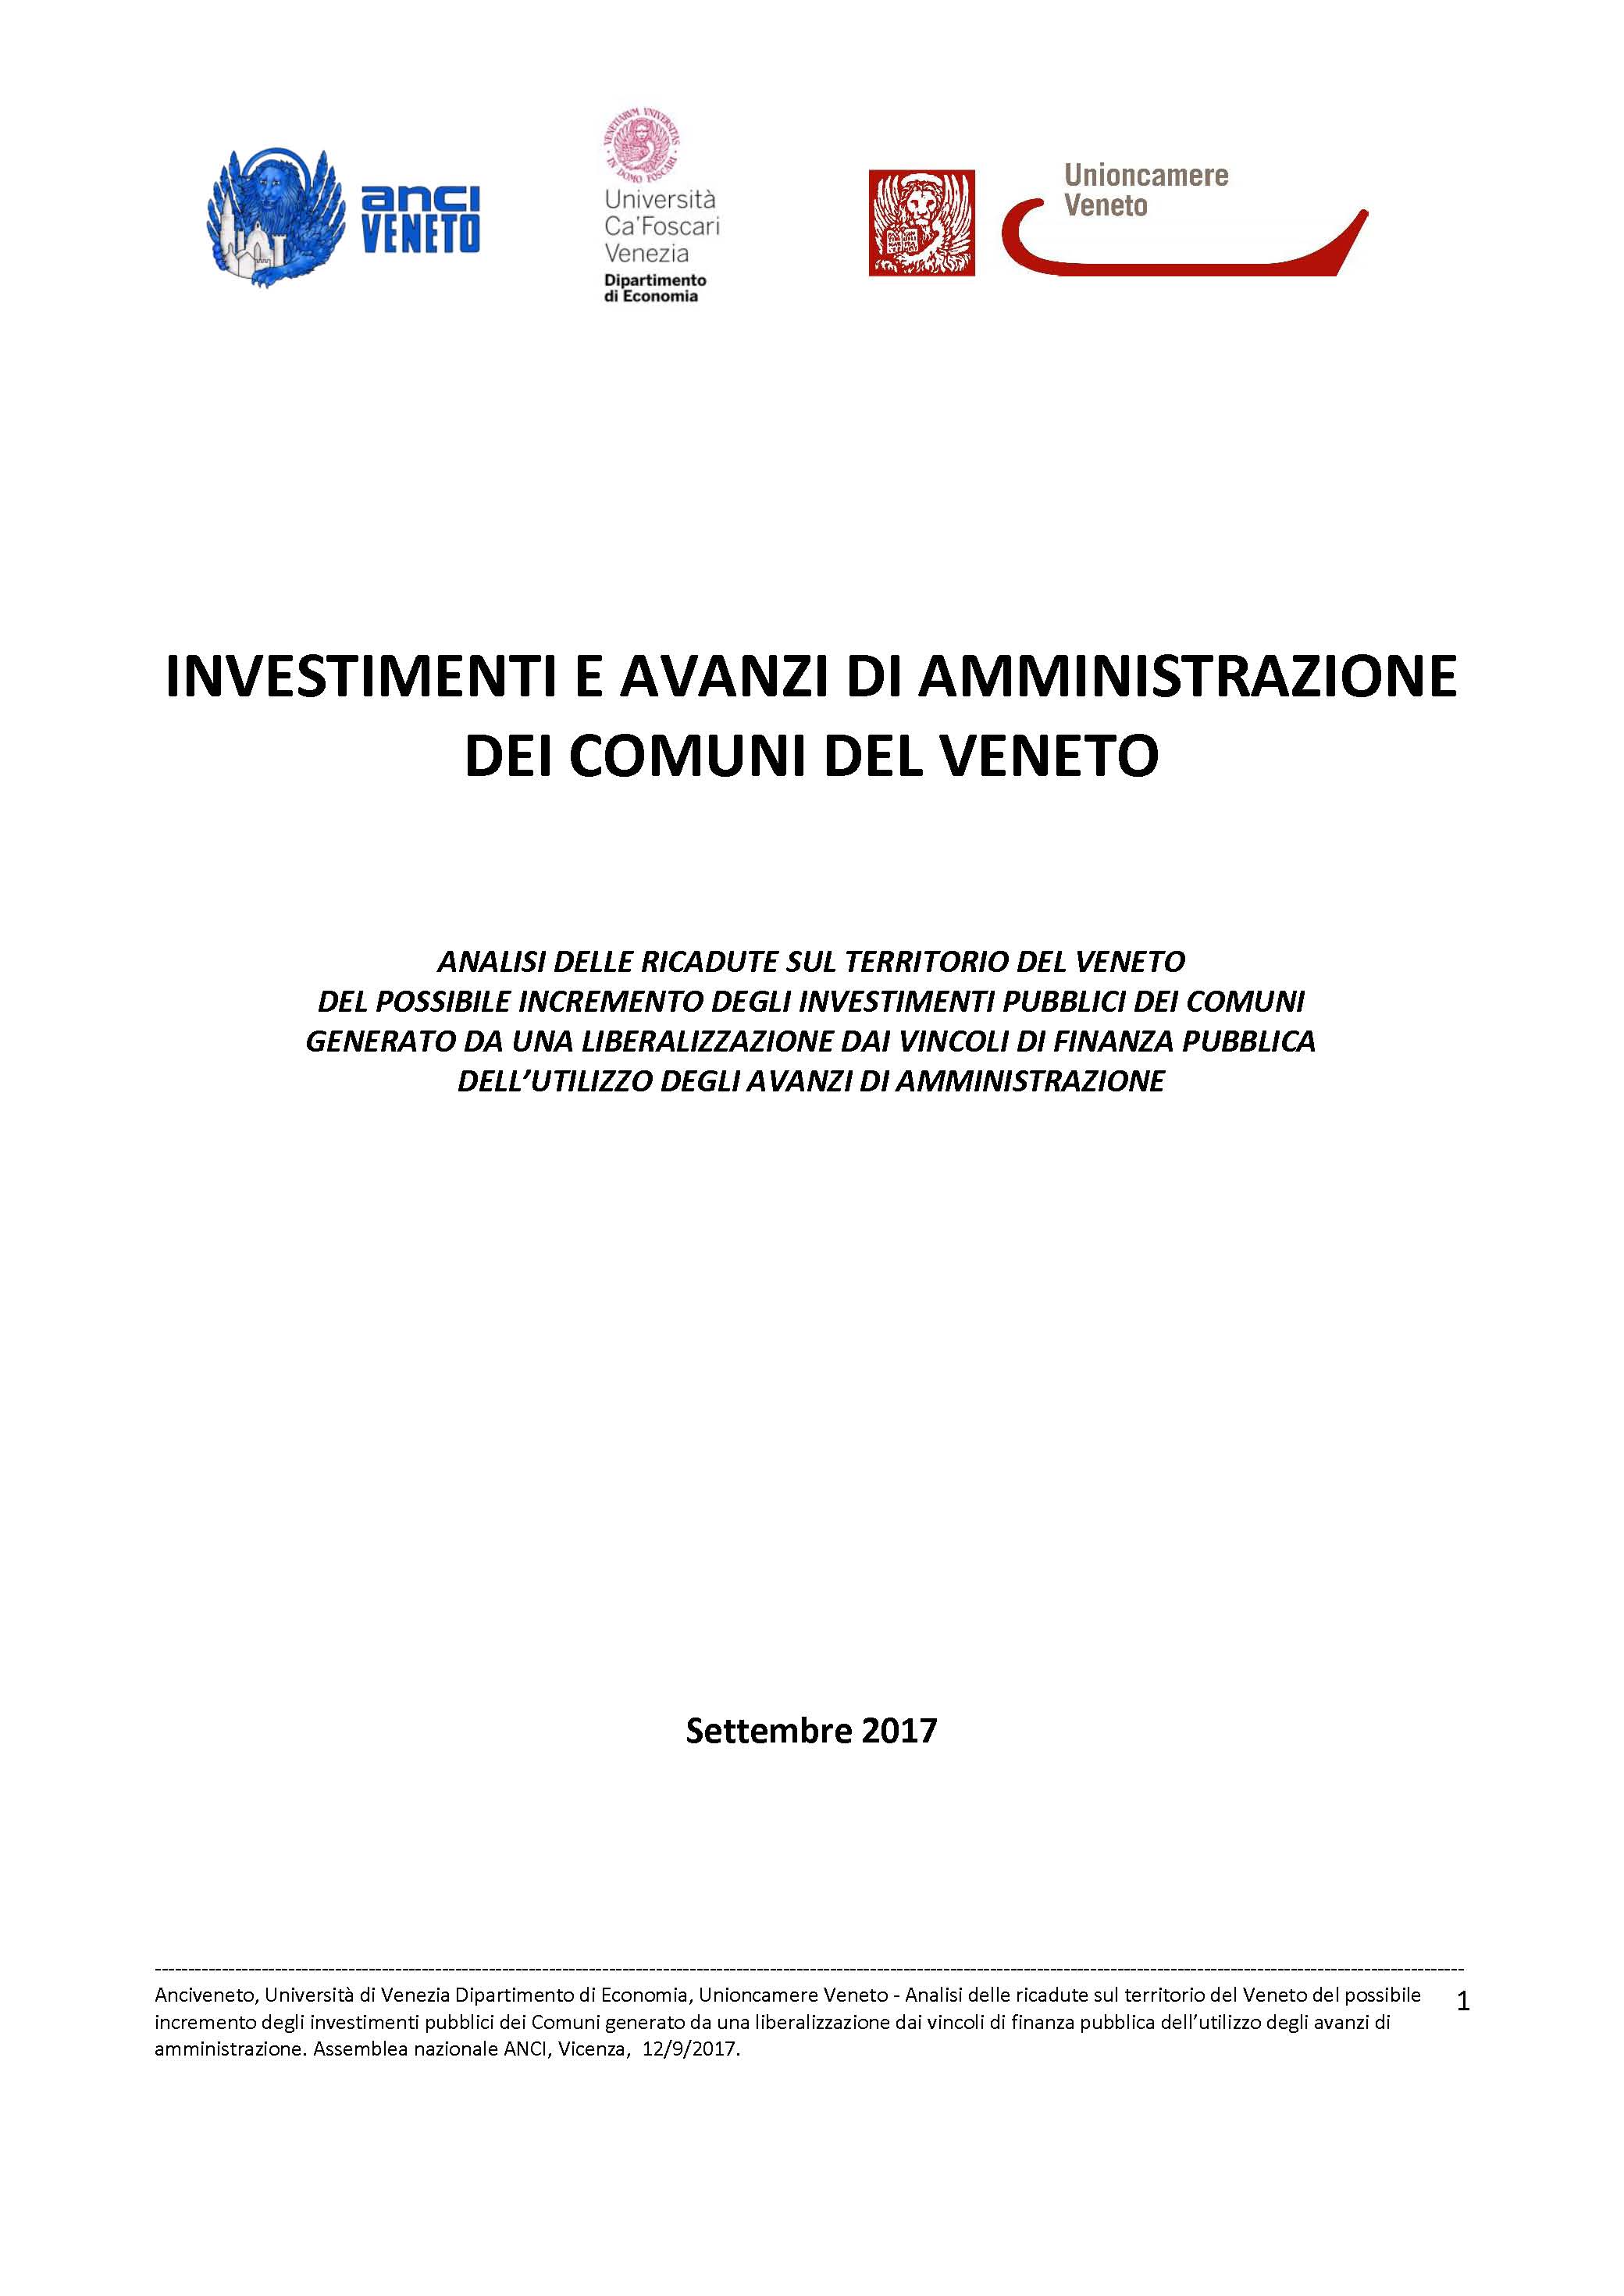 Investimenti e avanzi di Amministrazione dei comuni del Veneto